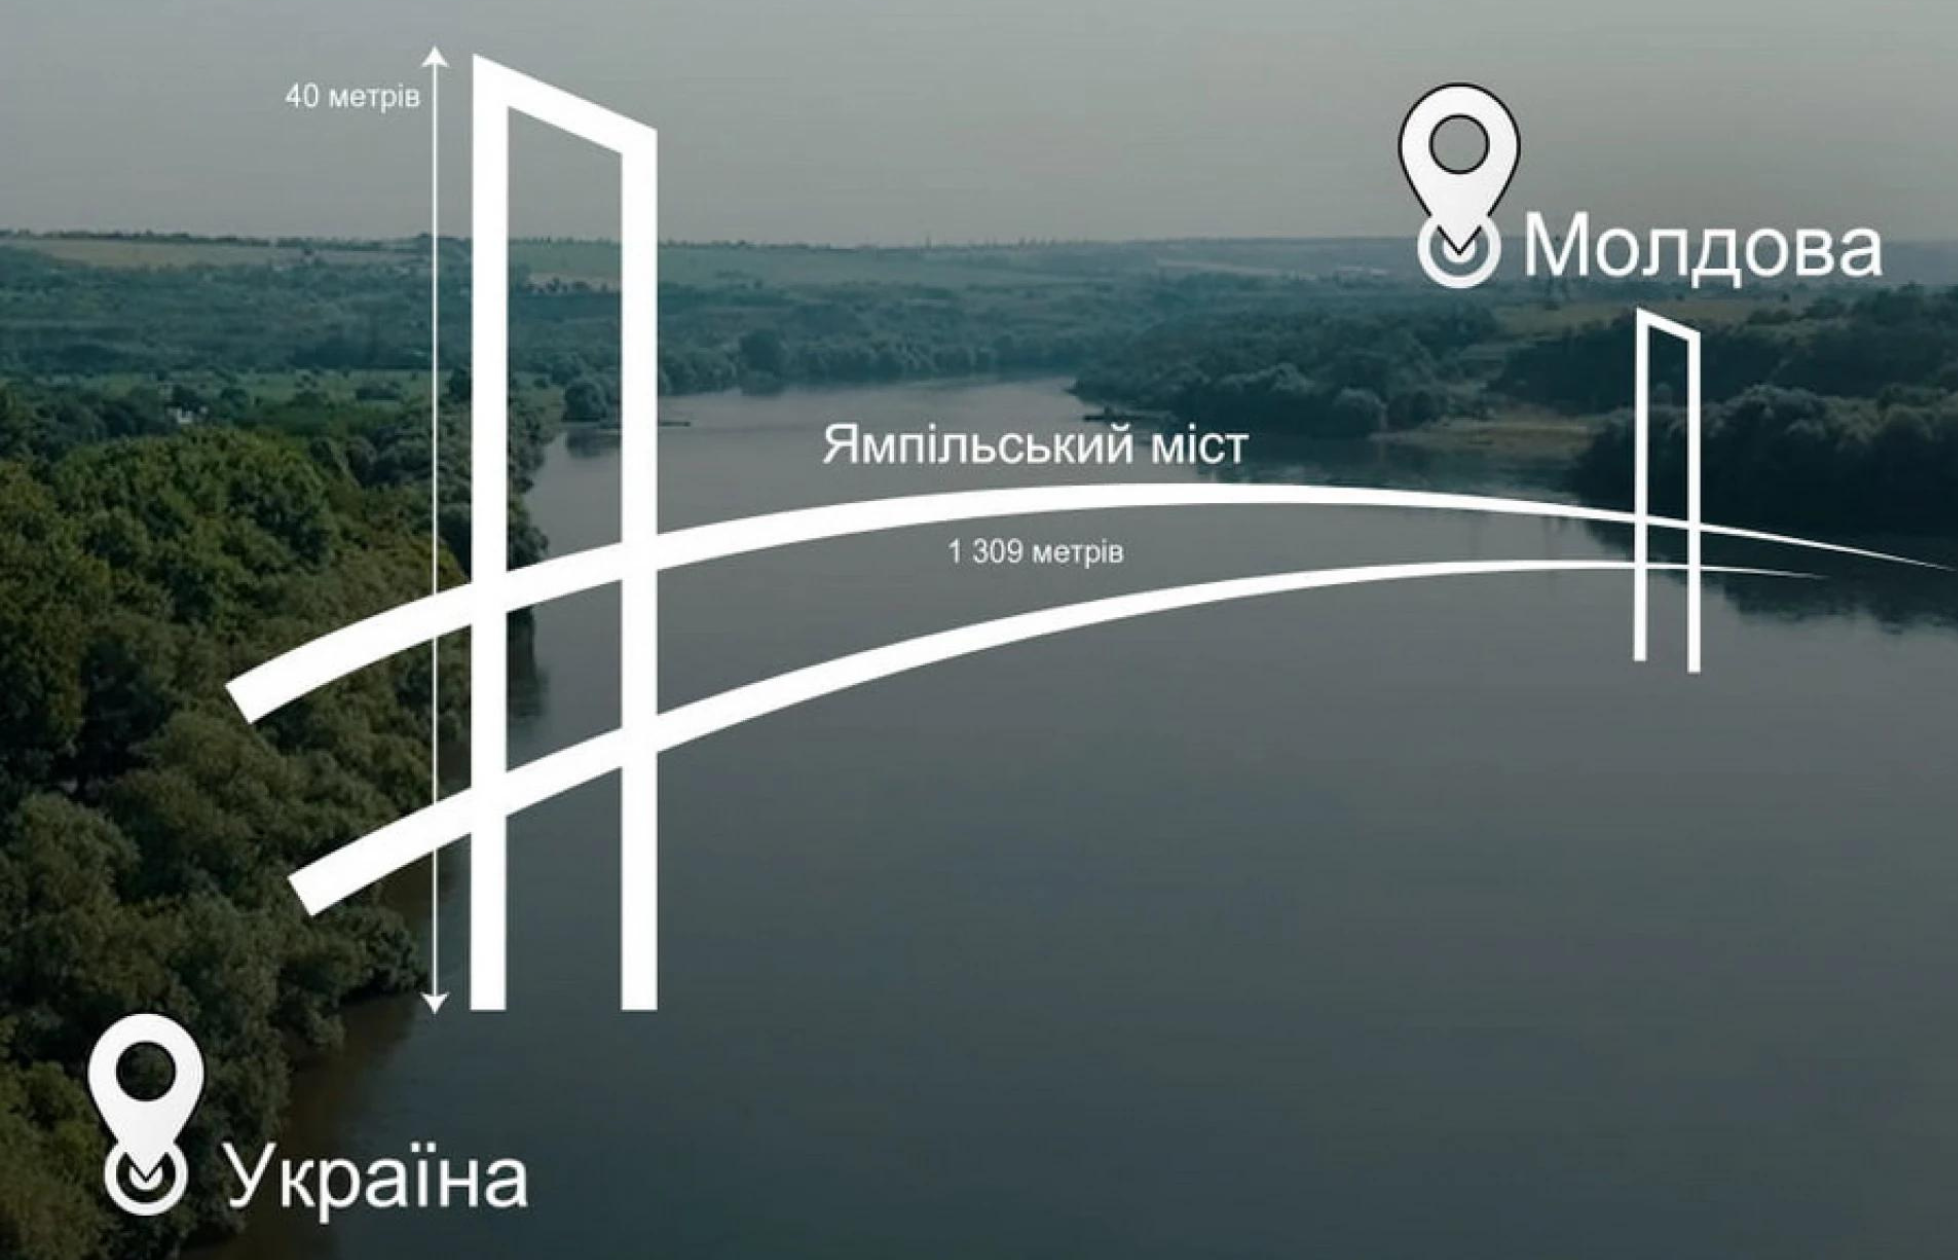 Вінницький міст: новий шлях сполучення між Україною та Молдовою збудують до кінця року